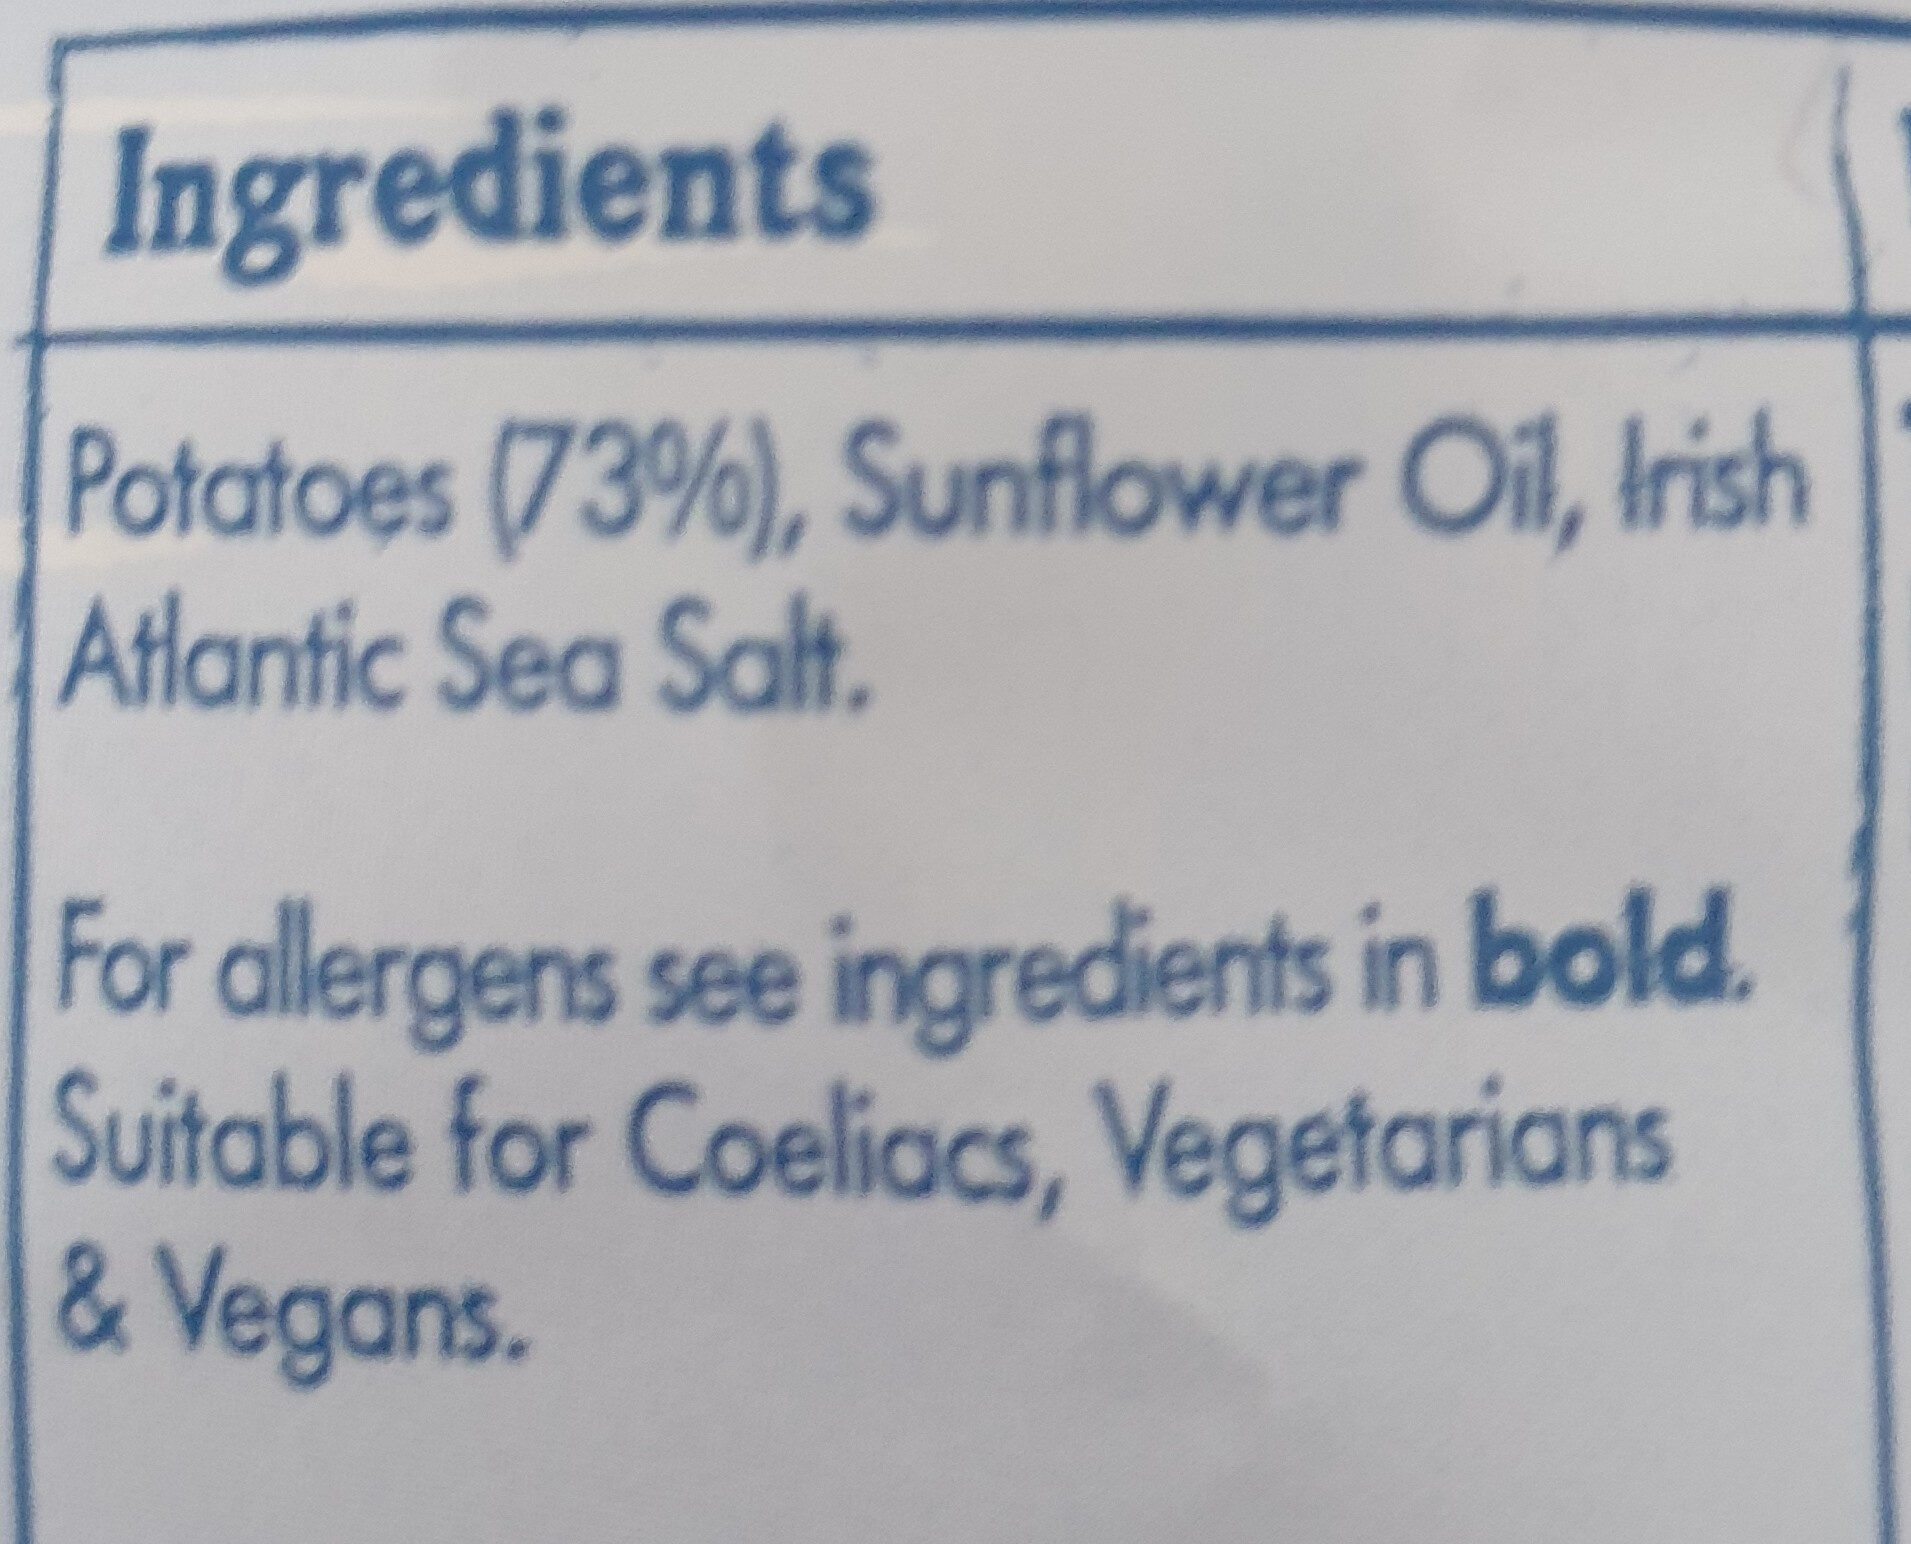 Keogh's Irish Atlantic Sea Salt - Ingredients